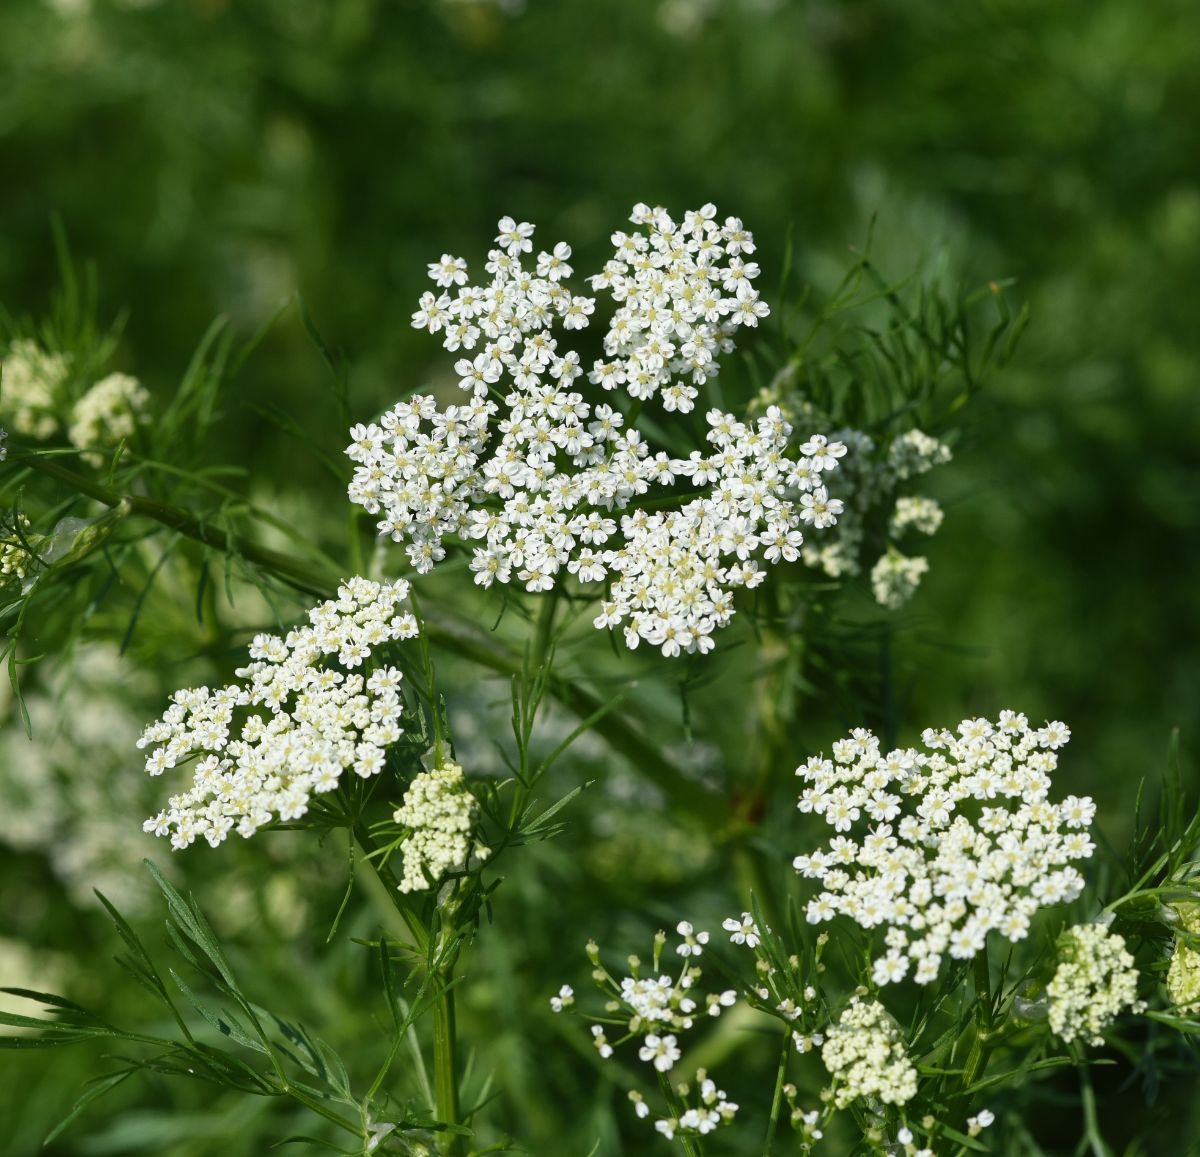 White flowering anise plant